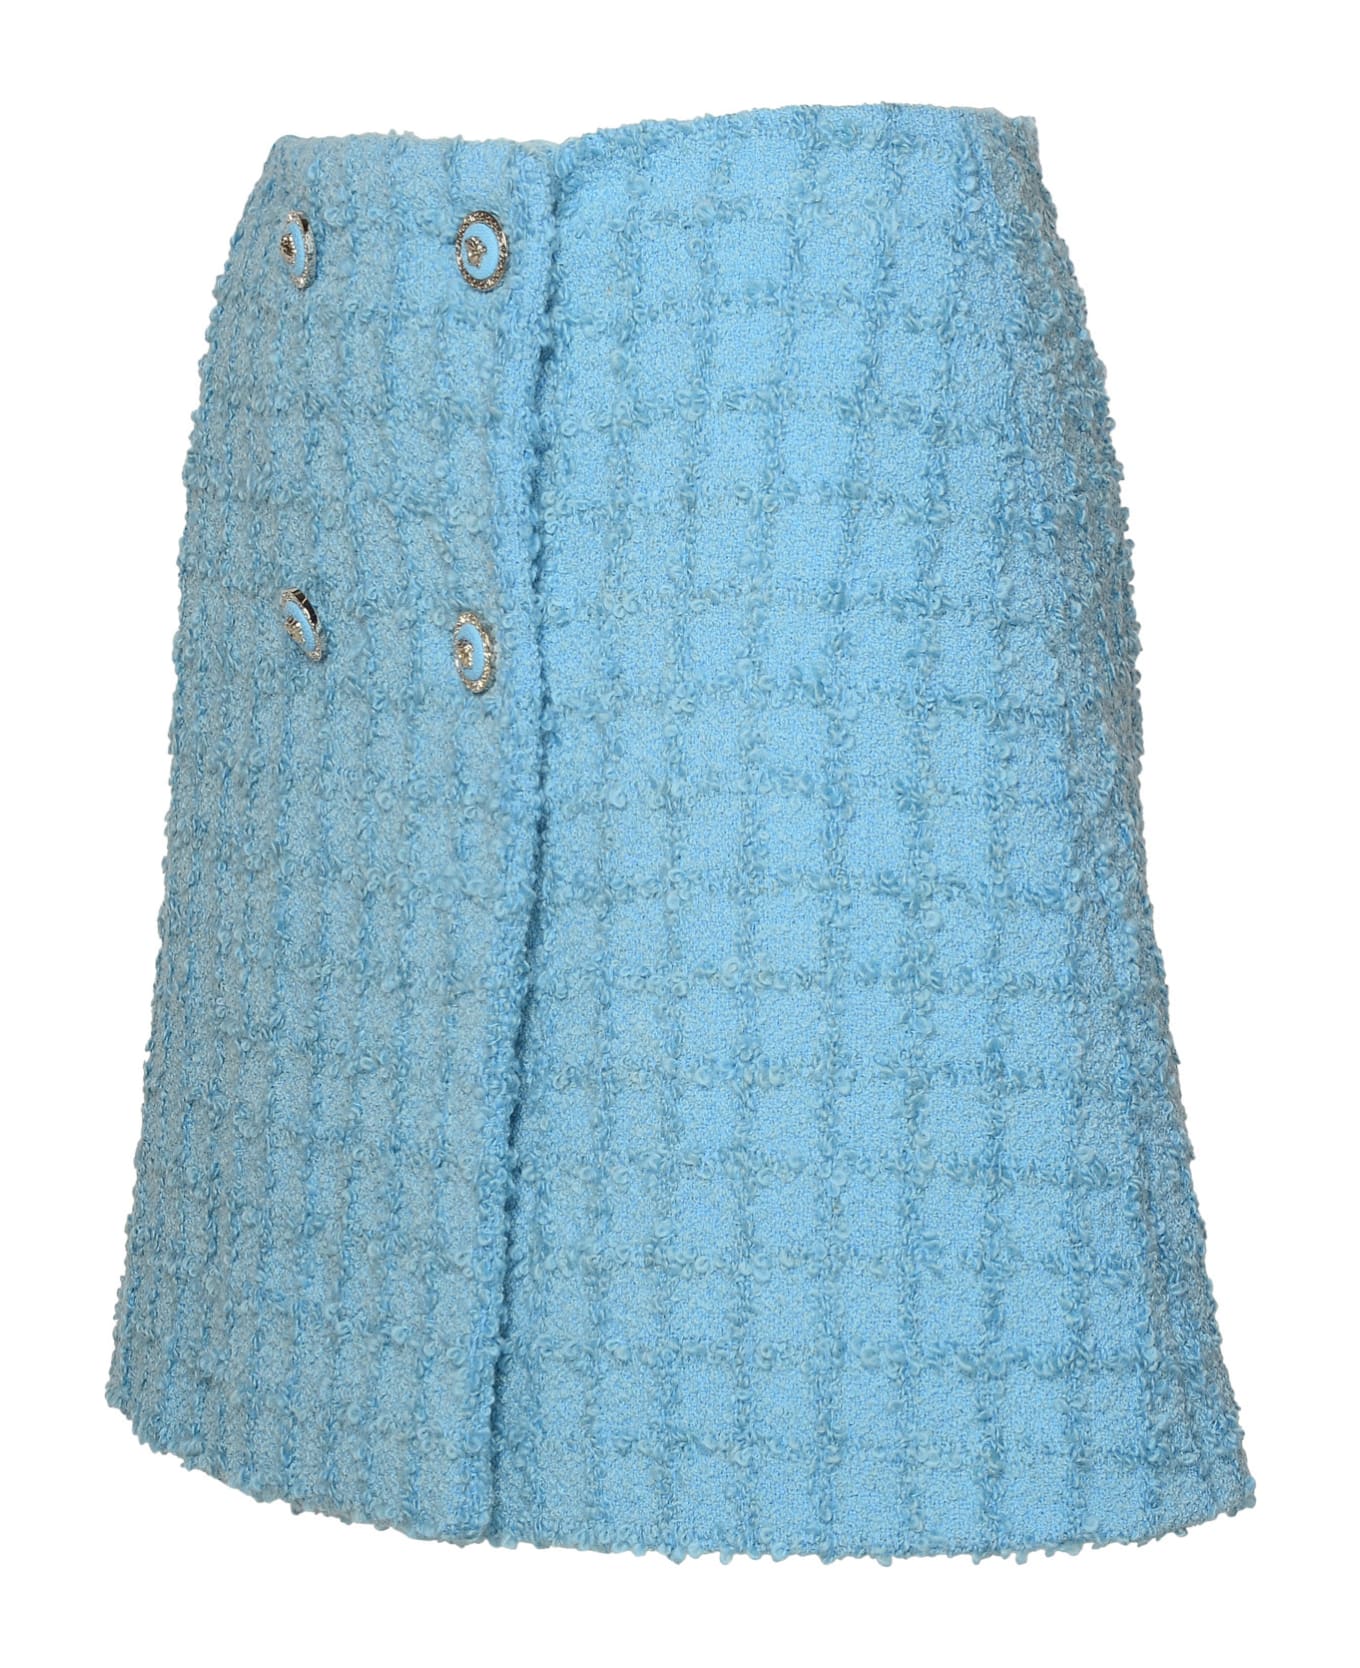 Versace Skirt In Light Blue Virgin Wool Blend - Light Blue